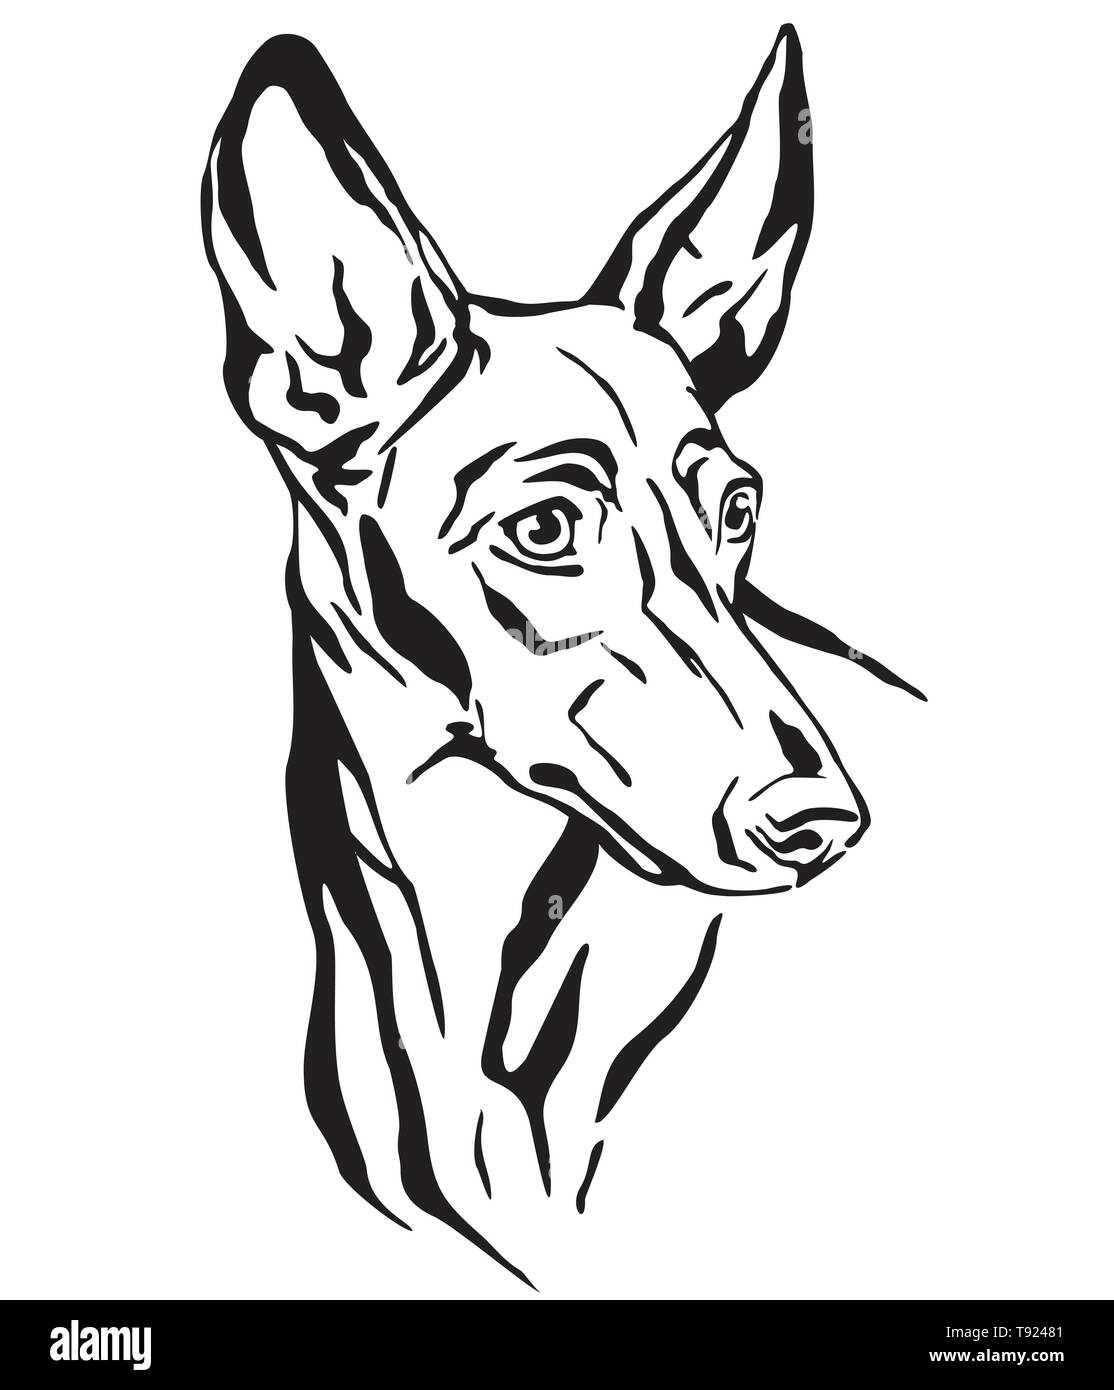 Profilo decorativo ritratto di Cirneco dell' Etna cane cercando di profilo, illustrazione vettoriale in colore nero isolato su sfondo bianco. Immagine per d Illustrazione Vettoriale